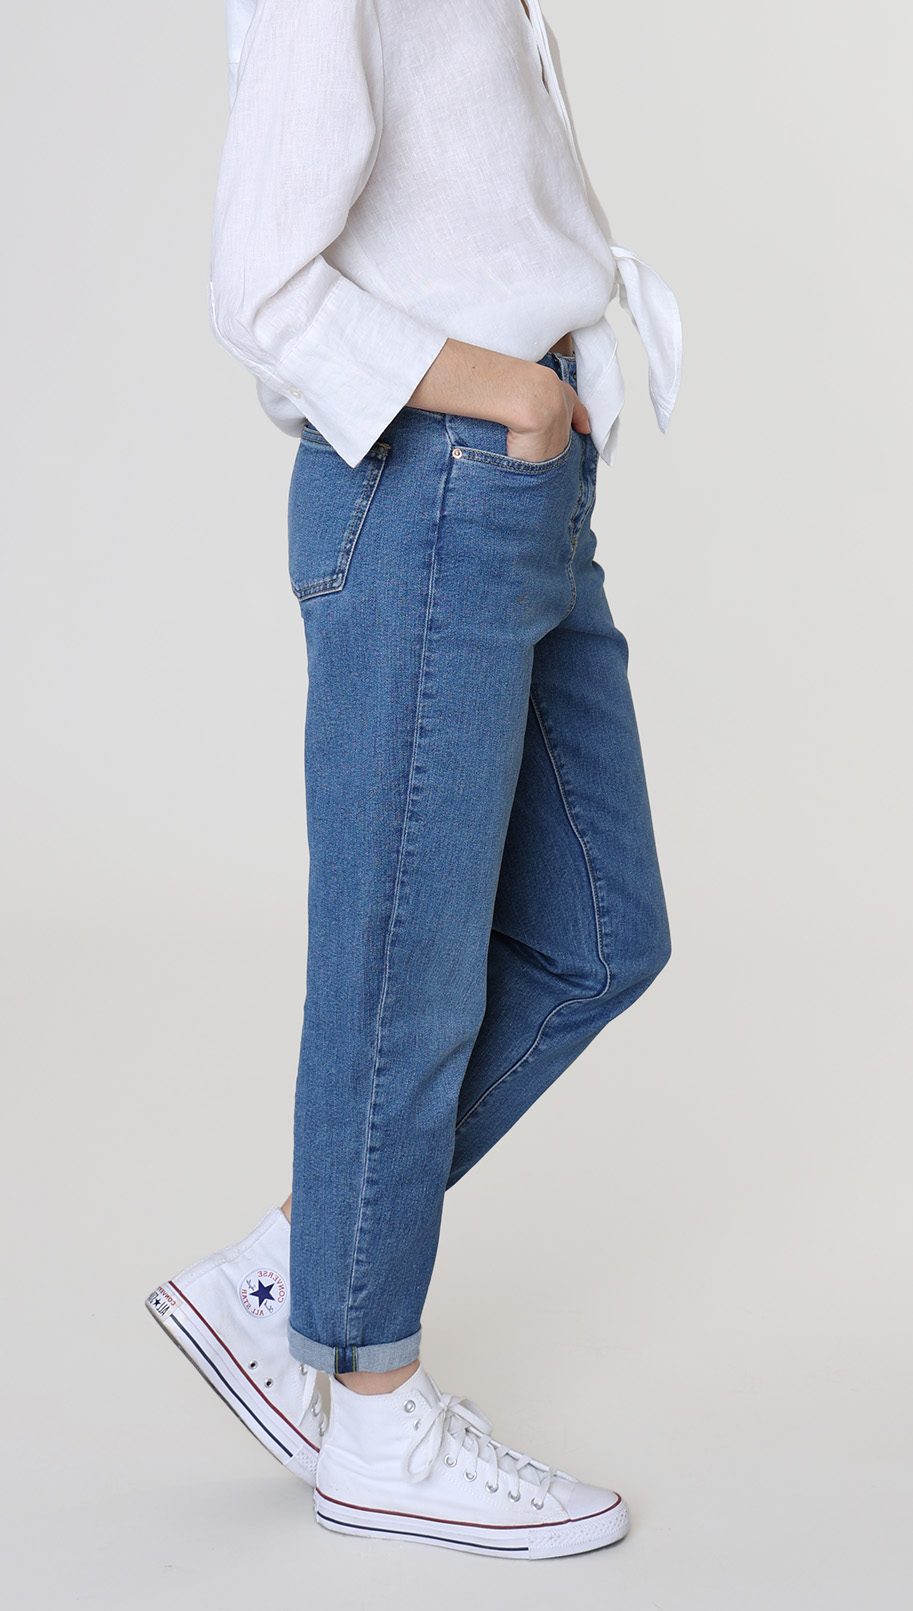 lars slim fit jeans achterkant broek